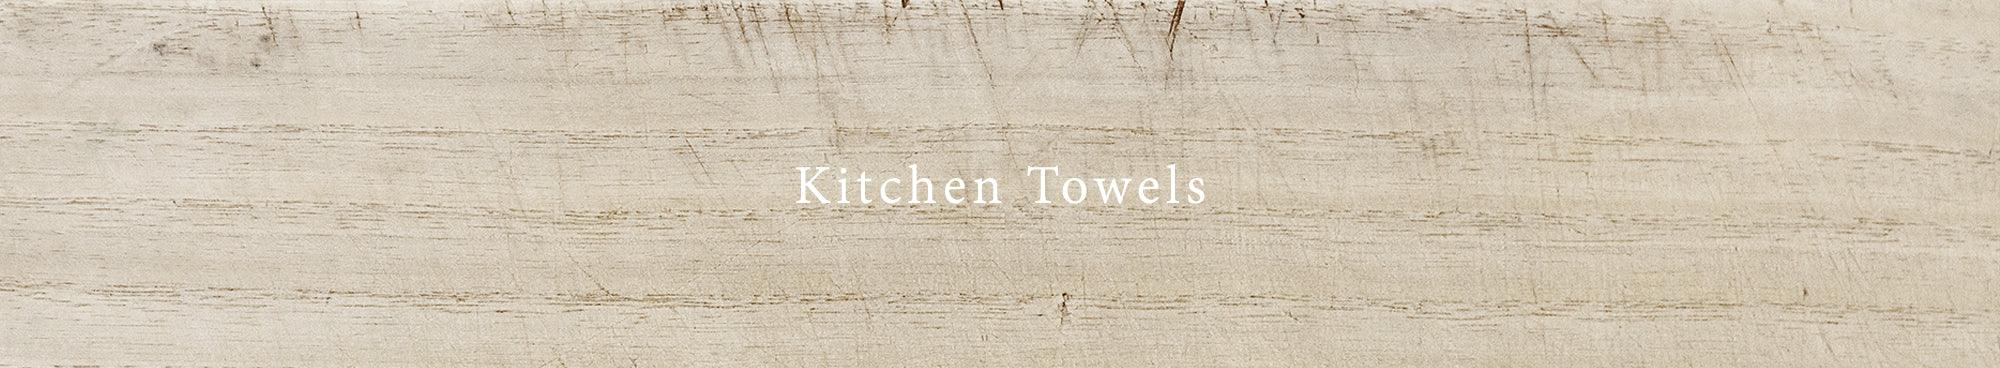 Kitchen Towels - Rikumo